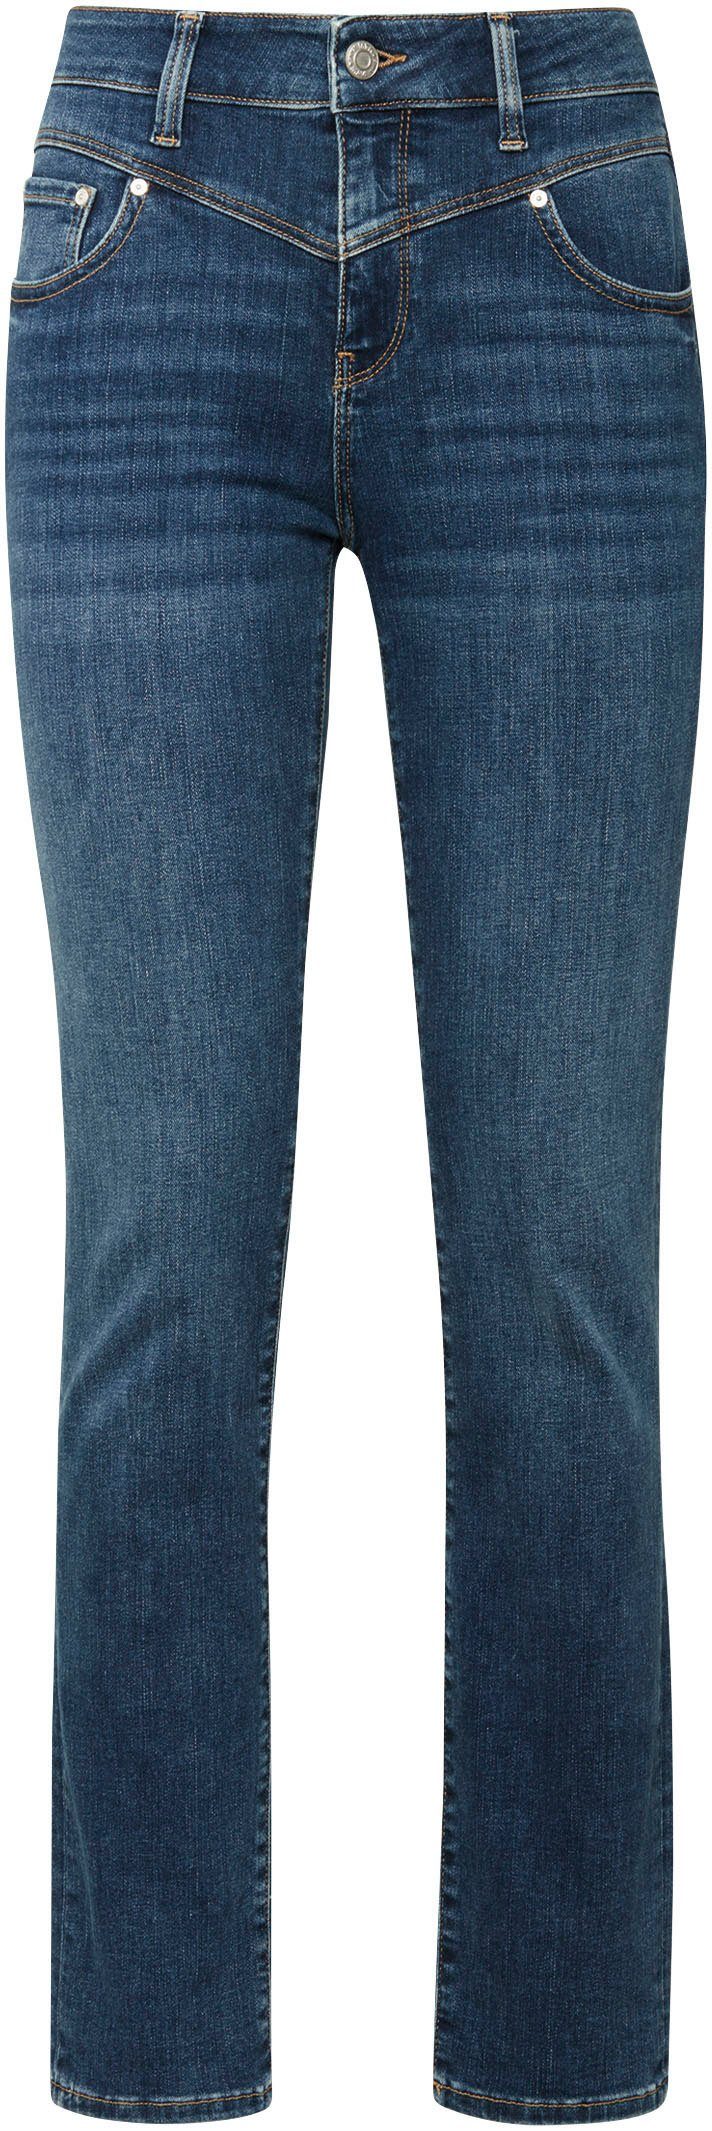 Slim-fit-Jeans trageangenehmer dank mid blue shaded Verarbeitung (mid Mavi hochwertiger blue) Stretchdenim